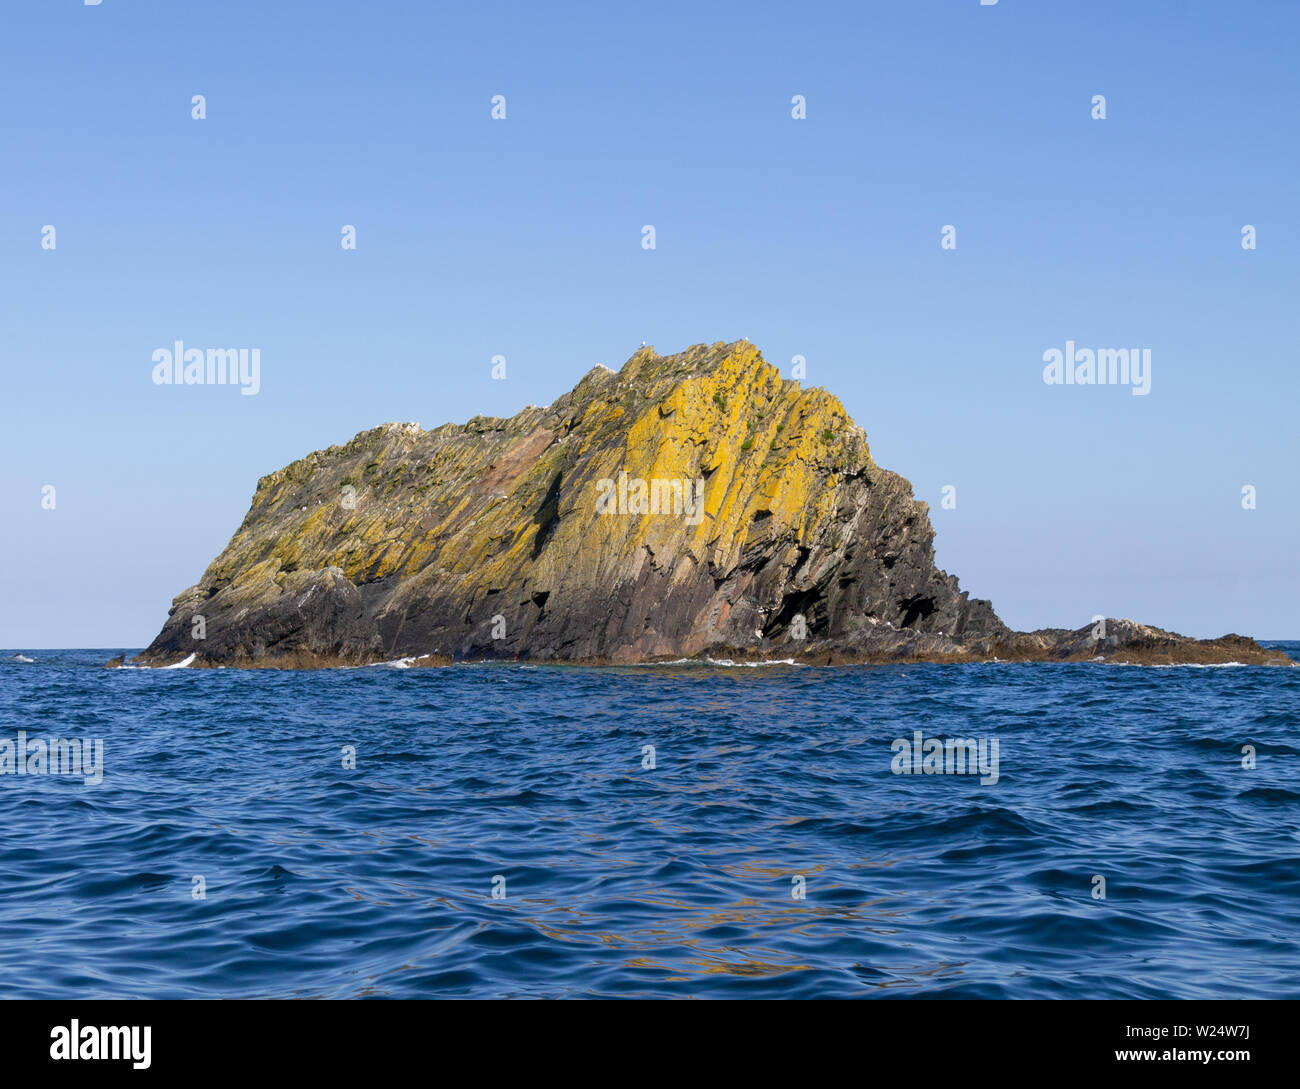 Rock formation appelée Black Rock qui monte de l'océan Atlantique au large de la côte sud-ouest de l'Irlande Banque D'Images